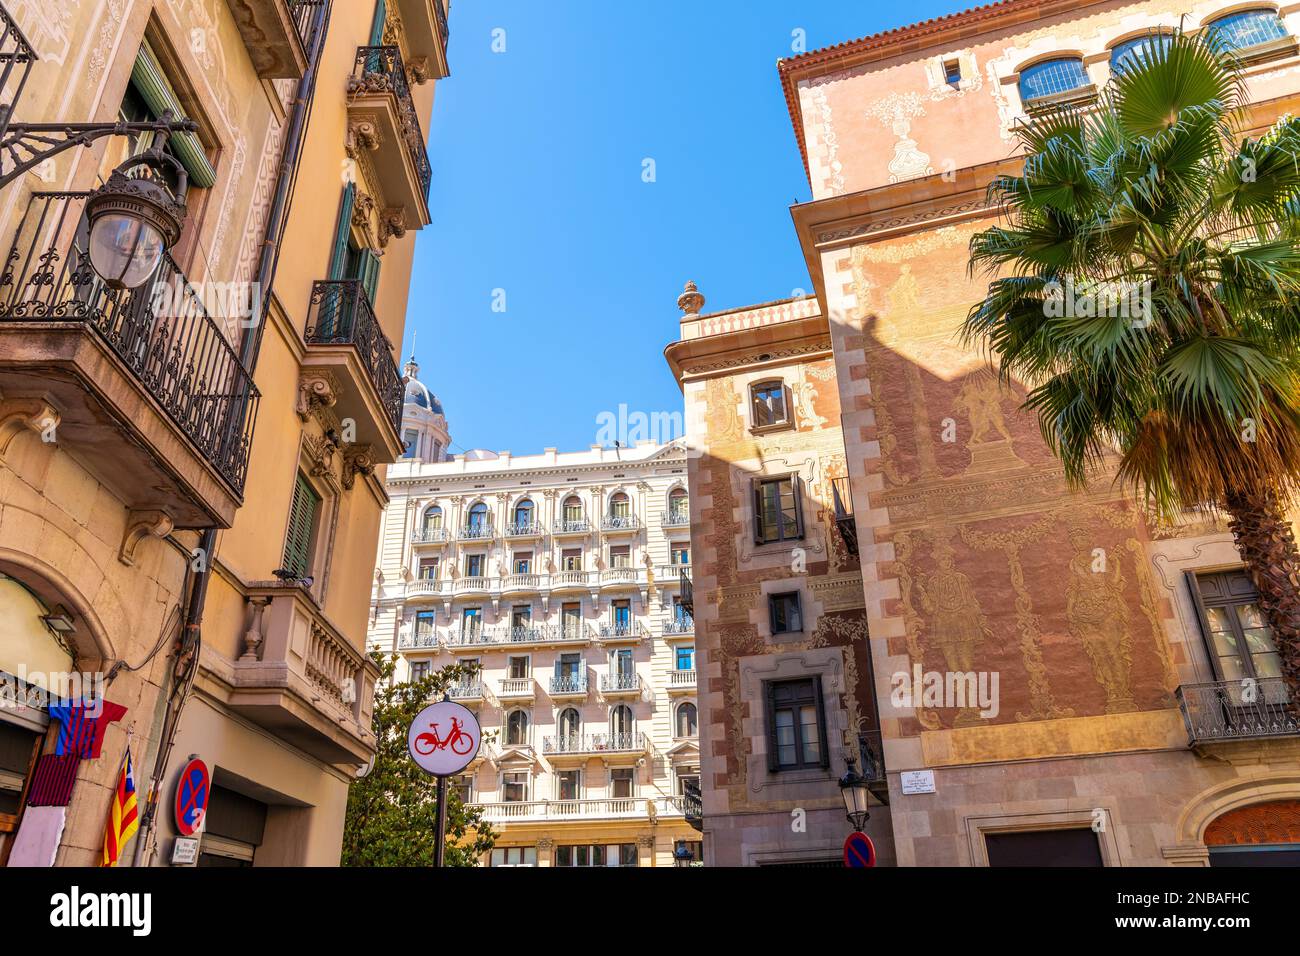 Farbenfrohe und malerische spanische Architektur im Viertel El Born in der Nähe des gotischen Viertels und der Kathedrale in Barcelona, Spanien. Stockfoto